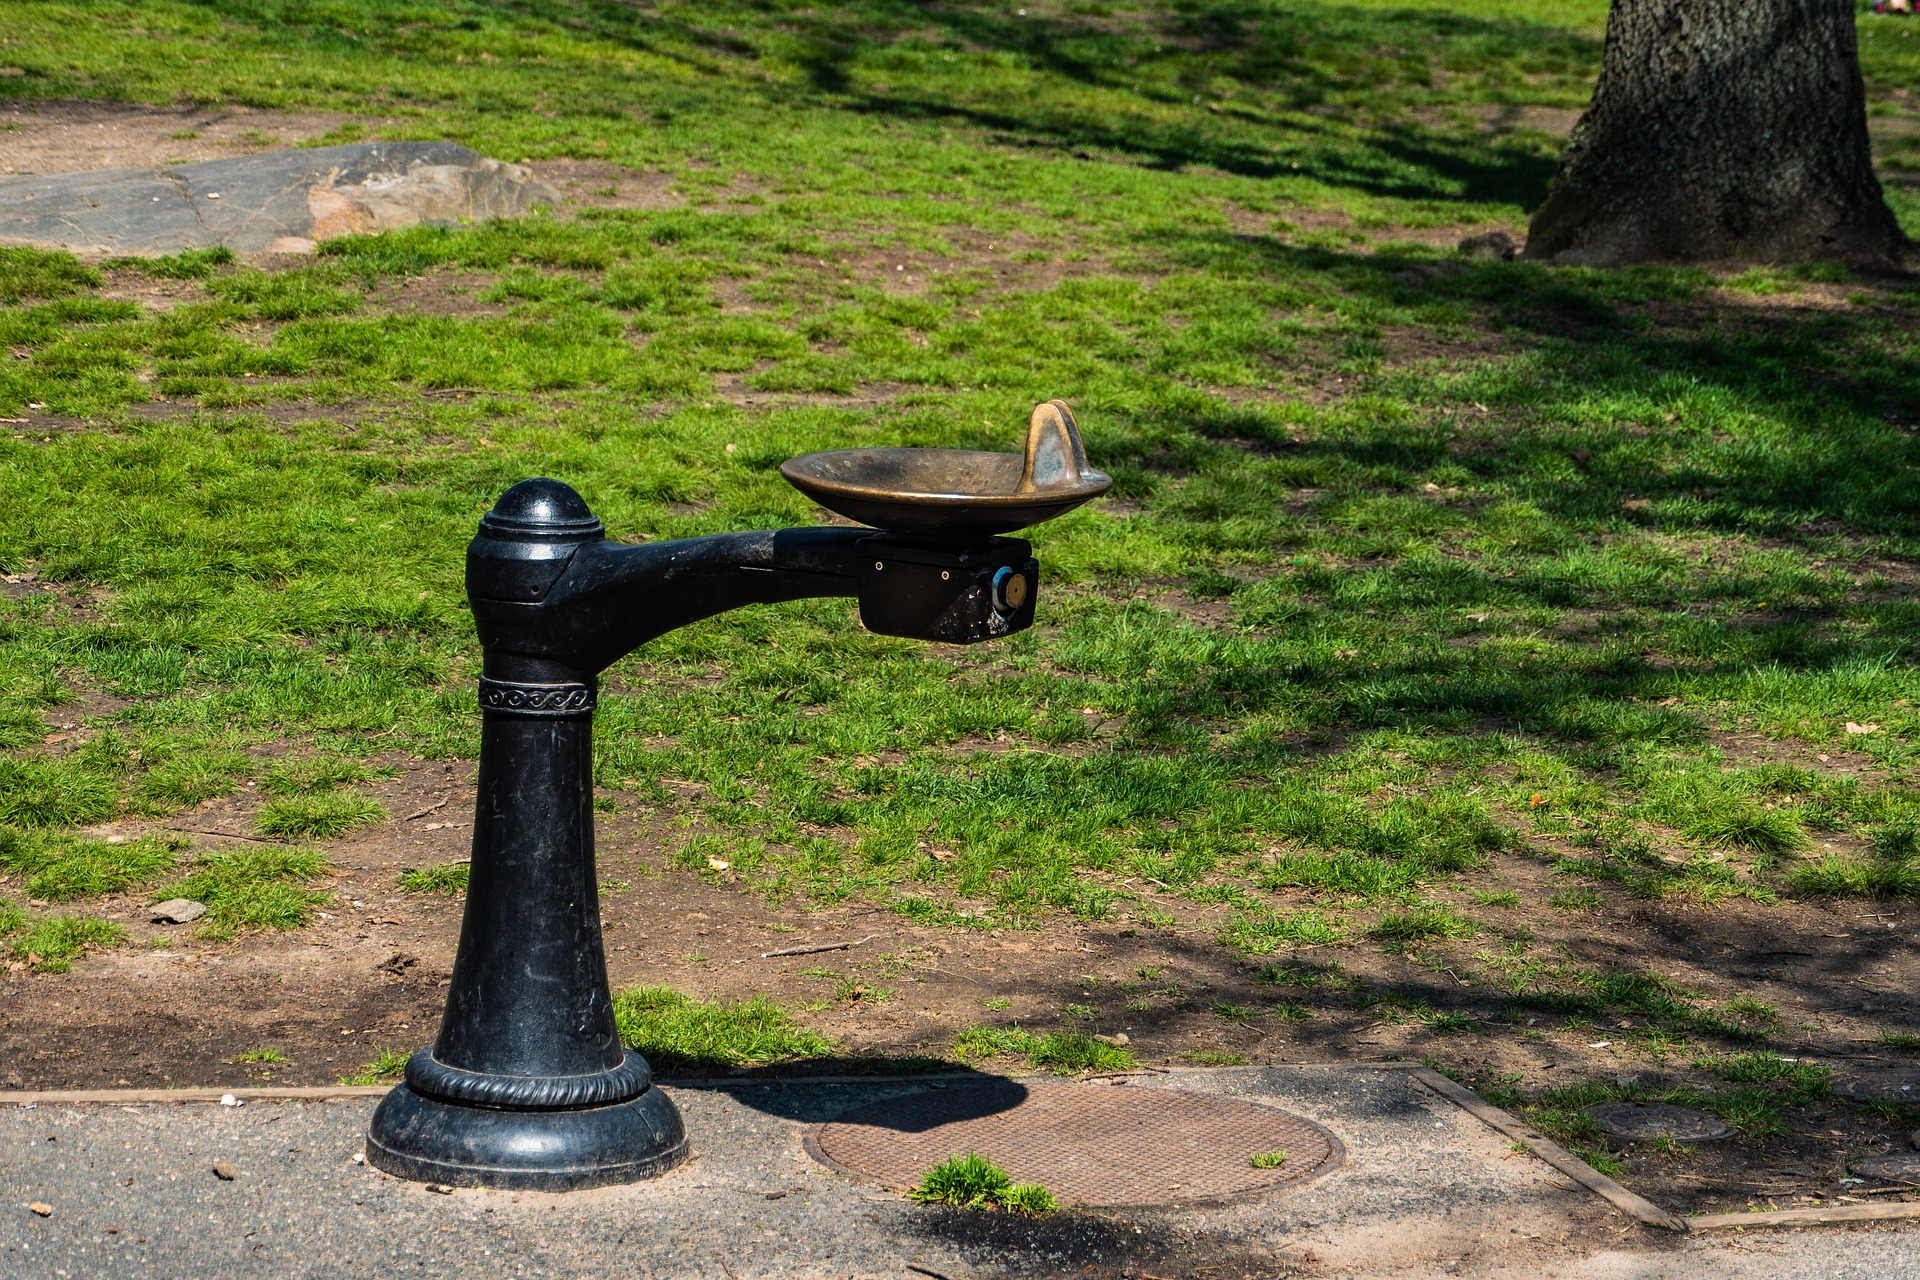 Фонтанчик для питьевой воды. Фонтанчики с питьевой водой в Ереване. Питьевой фонтанчик уличный. Питьевой фонтанчик в парке. Питьевые фонтанчики в парках.